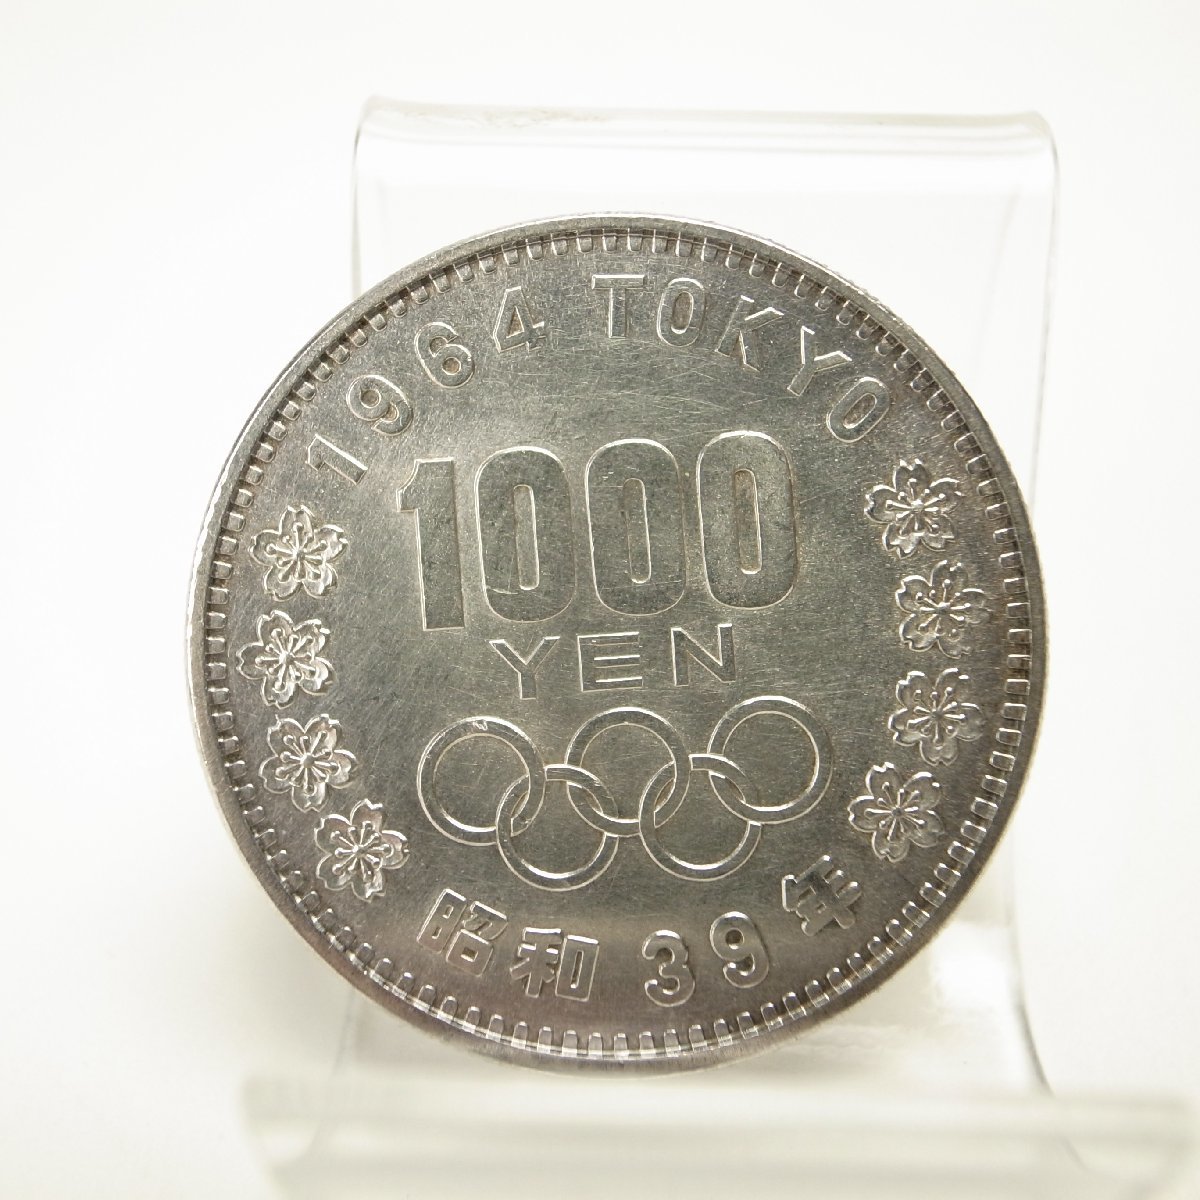 記念硬貨 東京オリンピック 1000円 銀貨 1枚 昭和39年 1964年 シルバー 千円_画像1